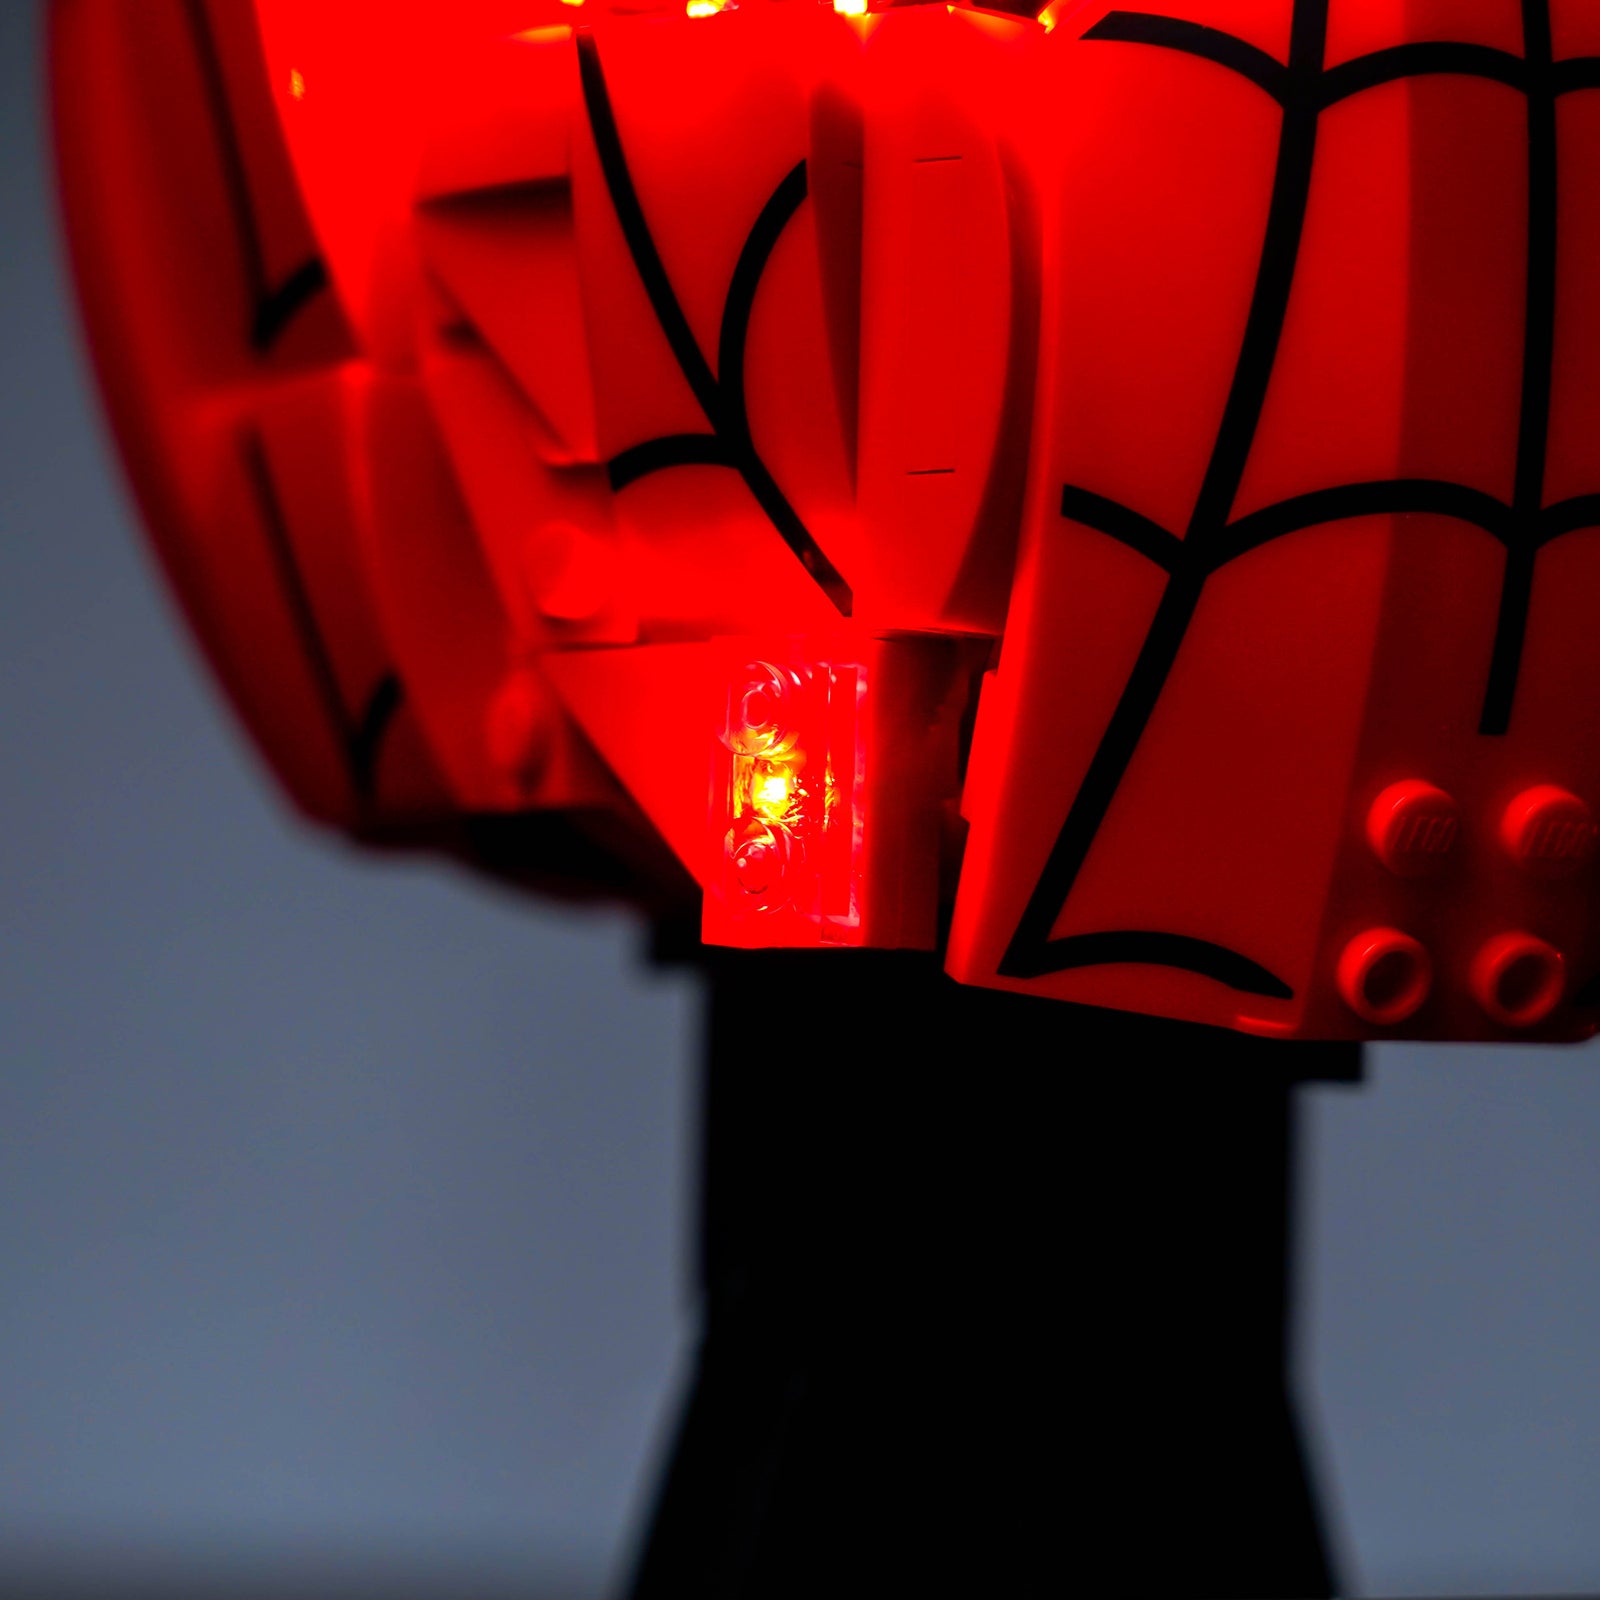 Kit d'éclairage BrickBling pour le masque de Marvel Spider-Man 76285